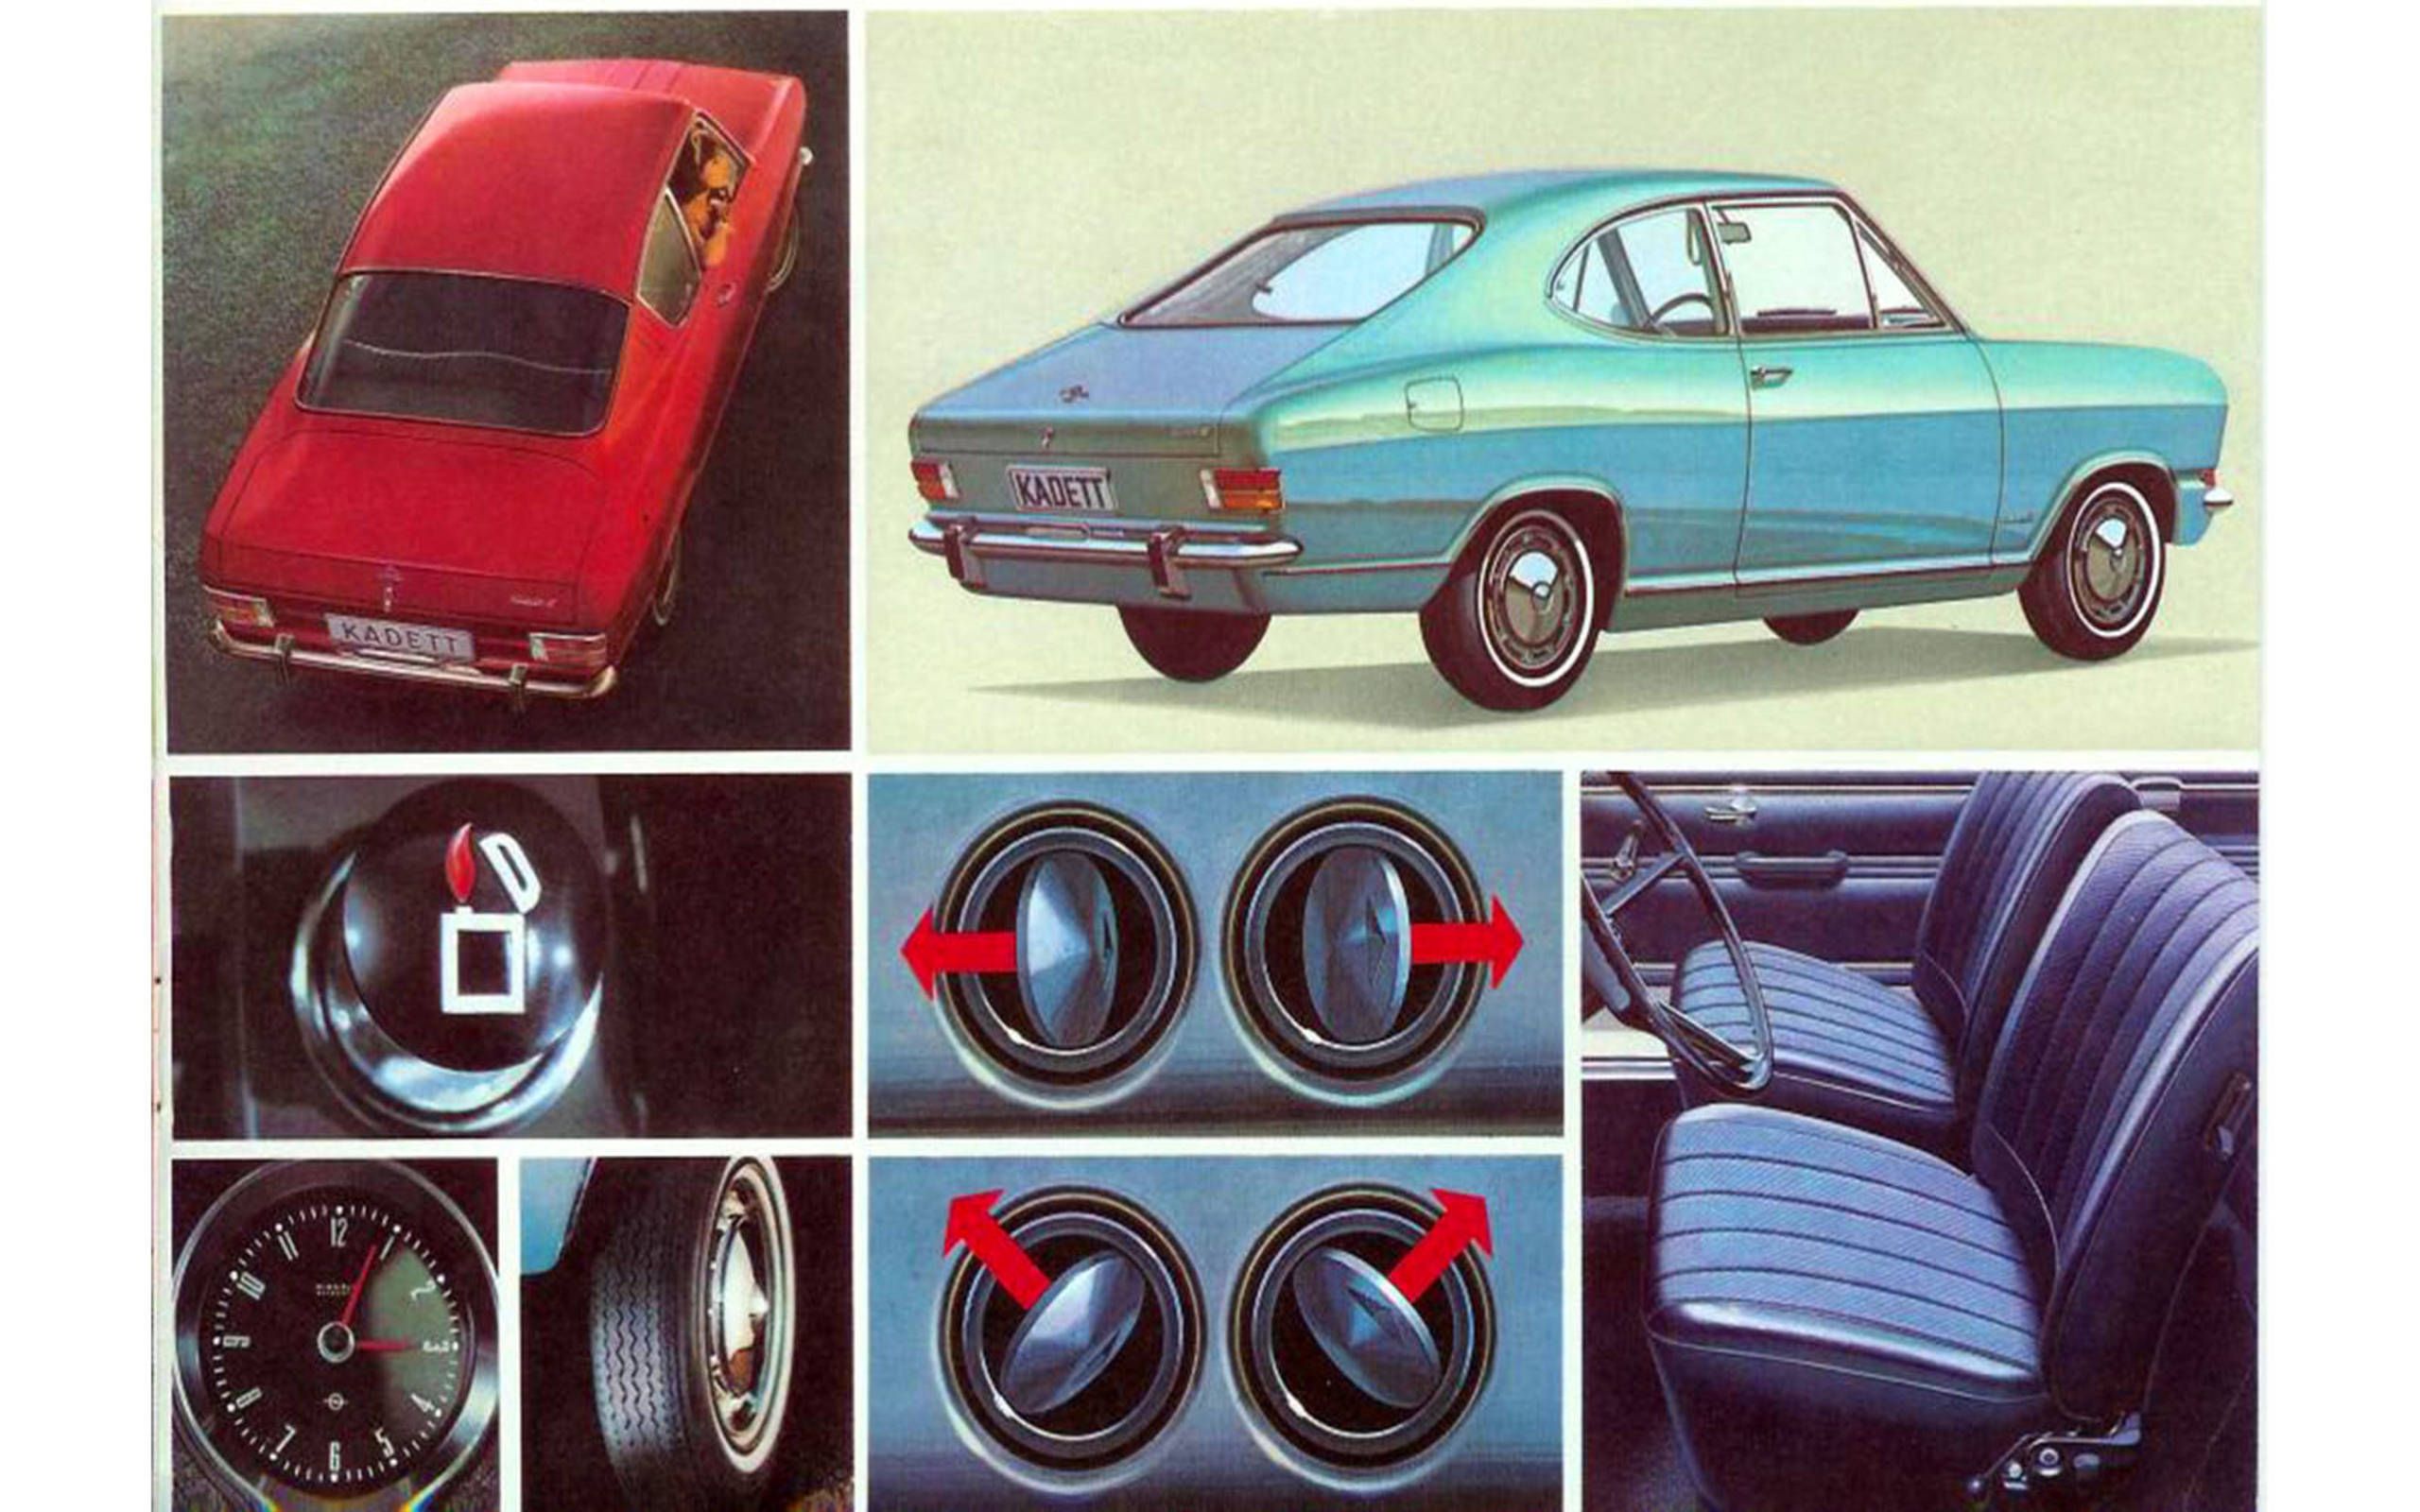 Best car clock ever: Kienzle from 1966 Opel Kadett